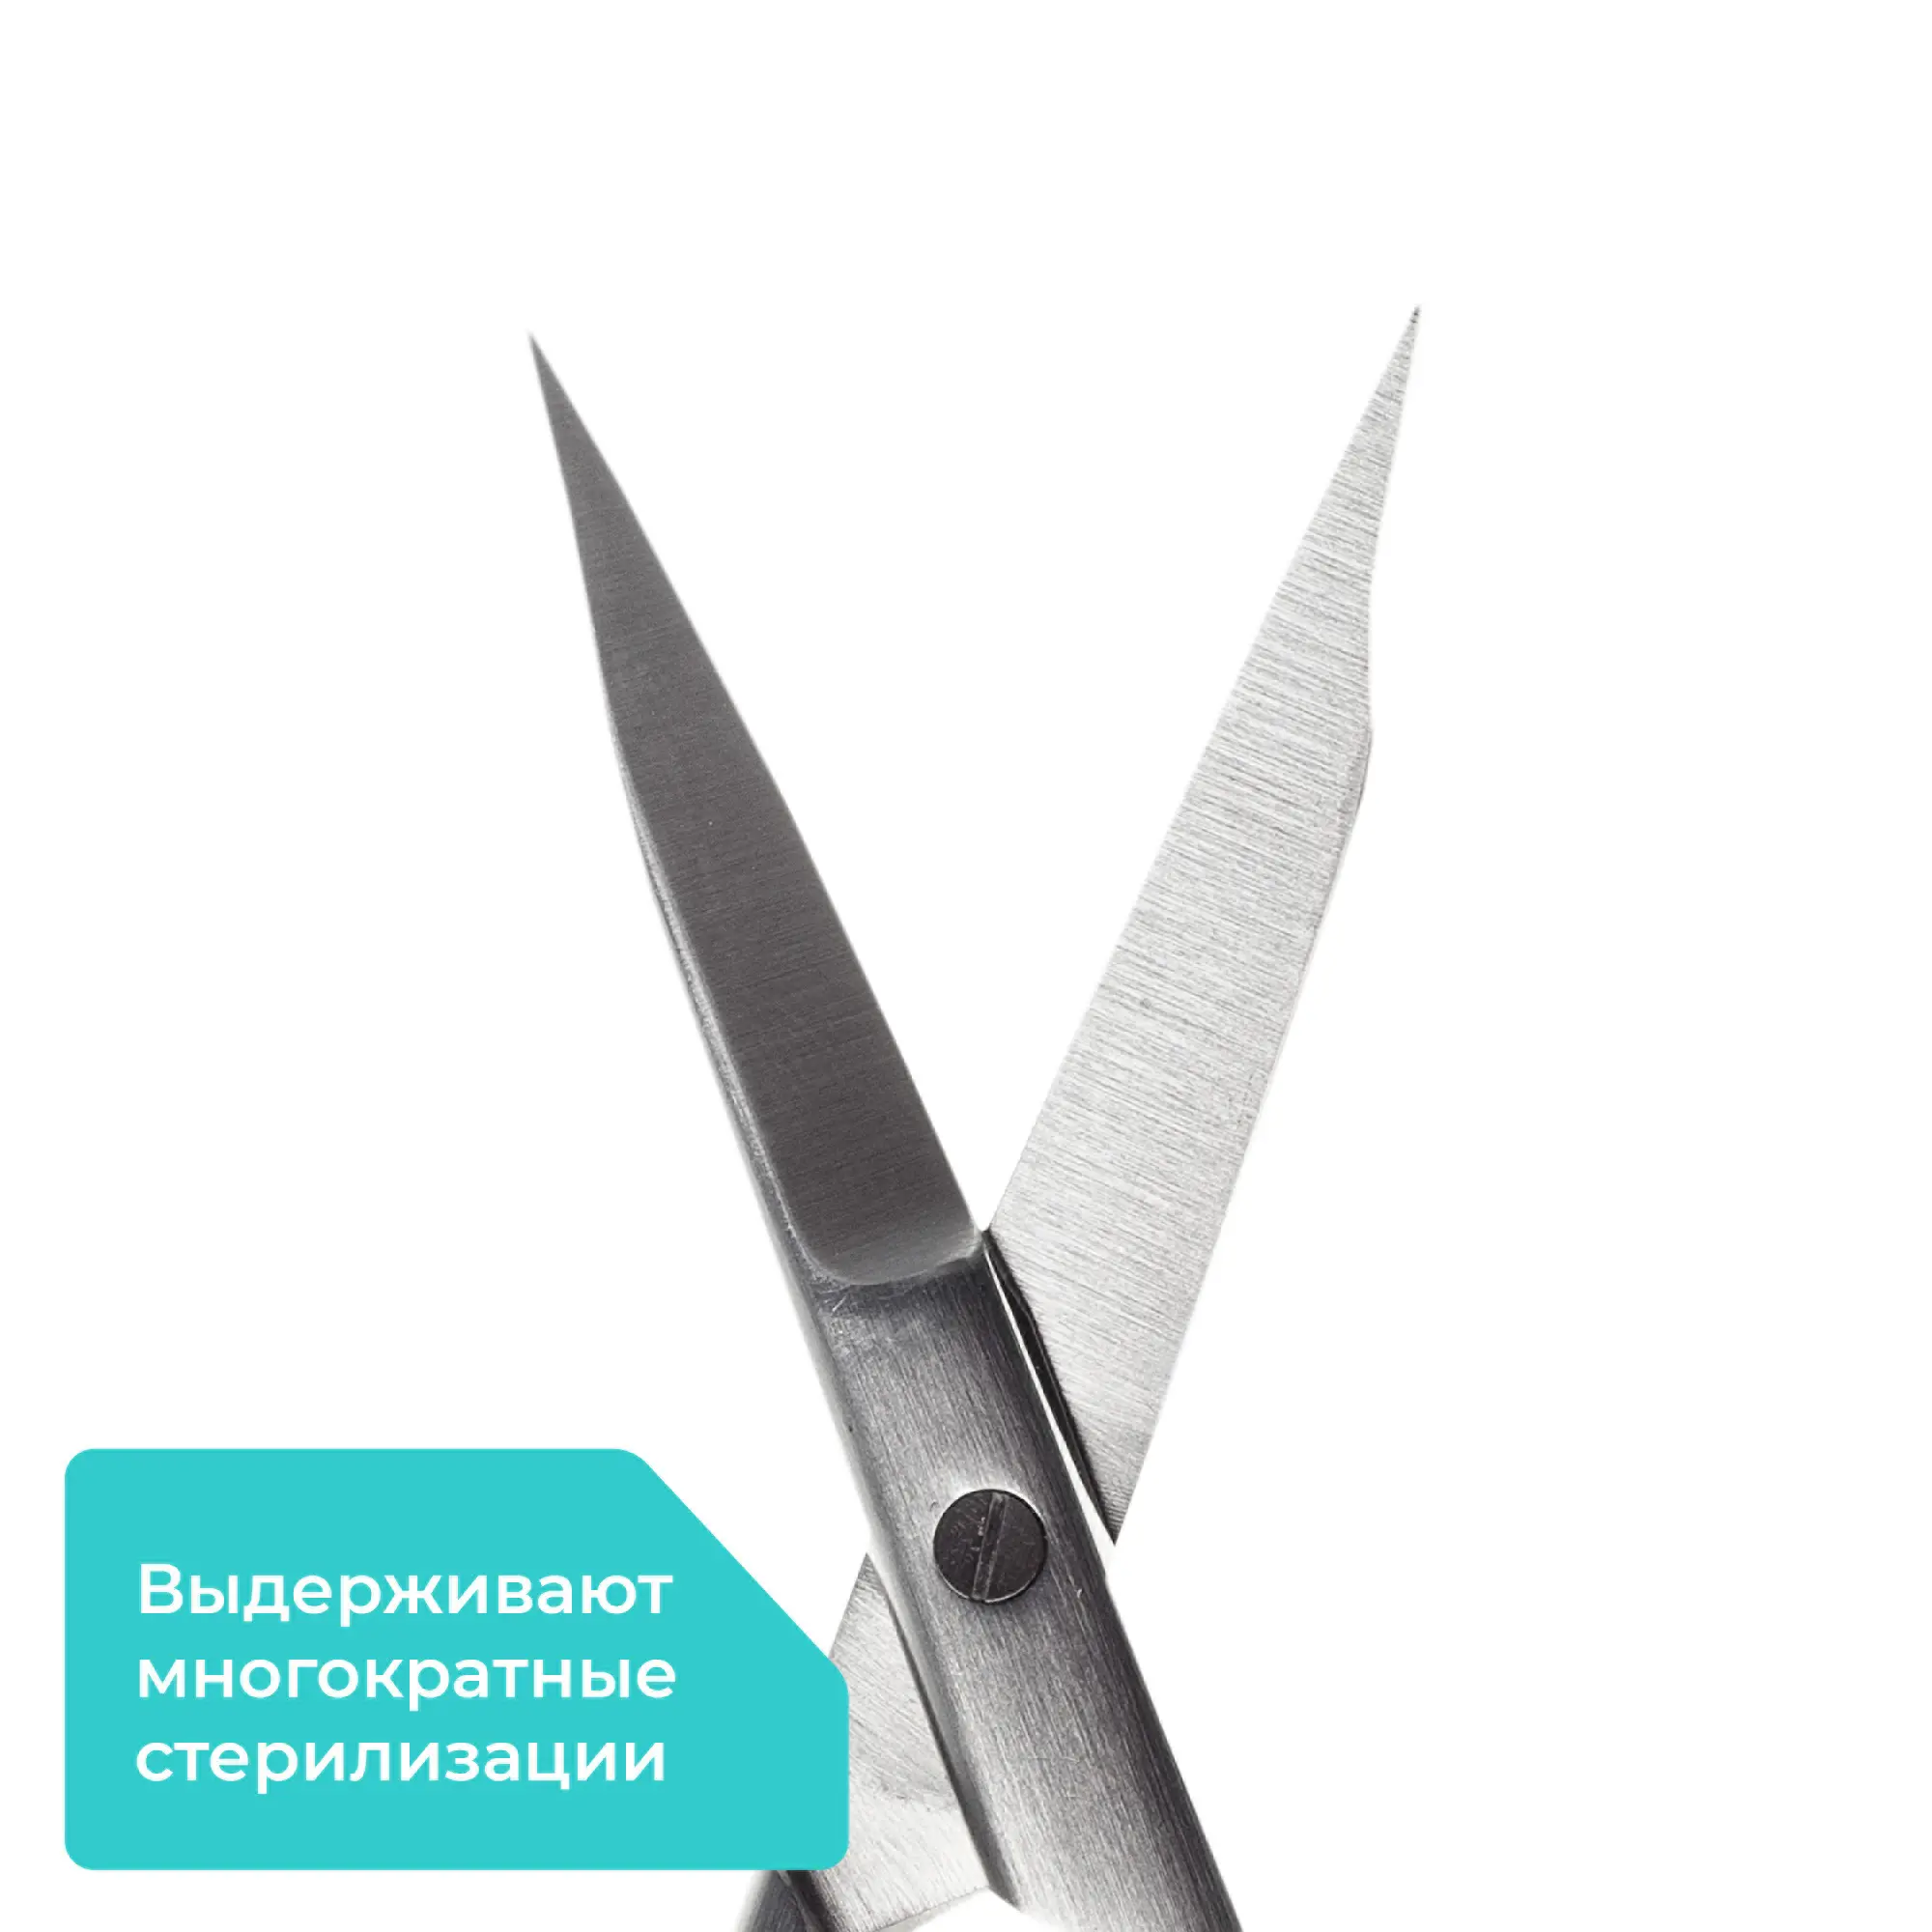 Ножницы хирургические Apexmed One Touch (Ван Тач), прямые, остроконечные, 130 мм, стоматологические, дентальные